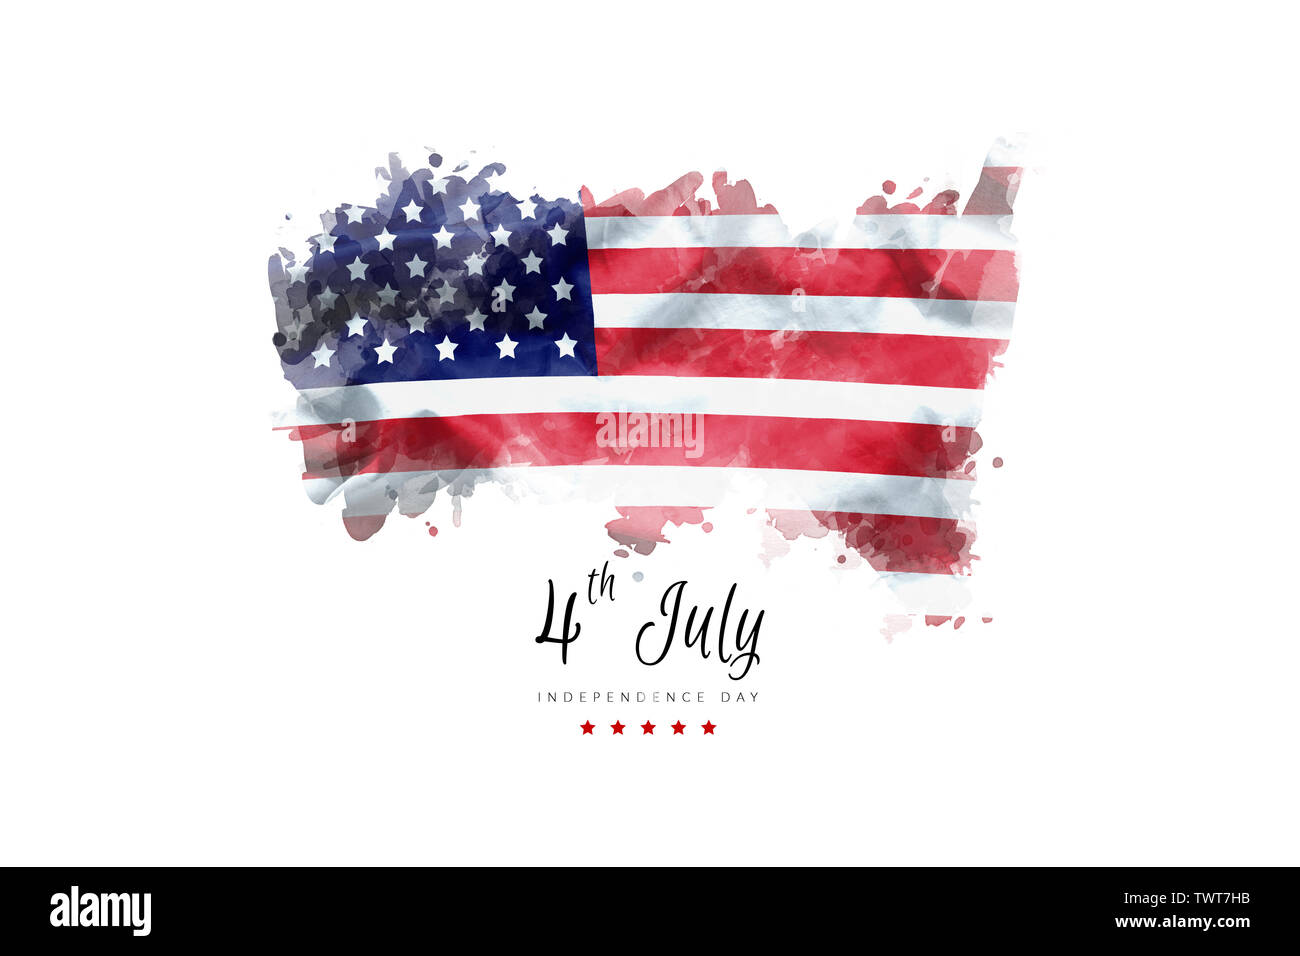 Tarjeta de felicitación el día de la independencia de la bandera americana de fondo grunge Foto de stock